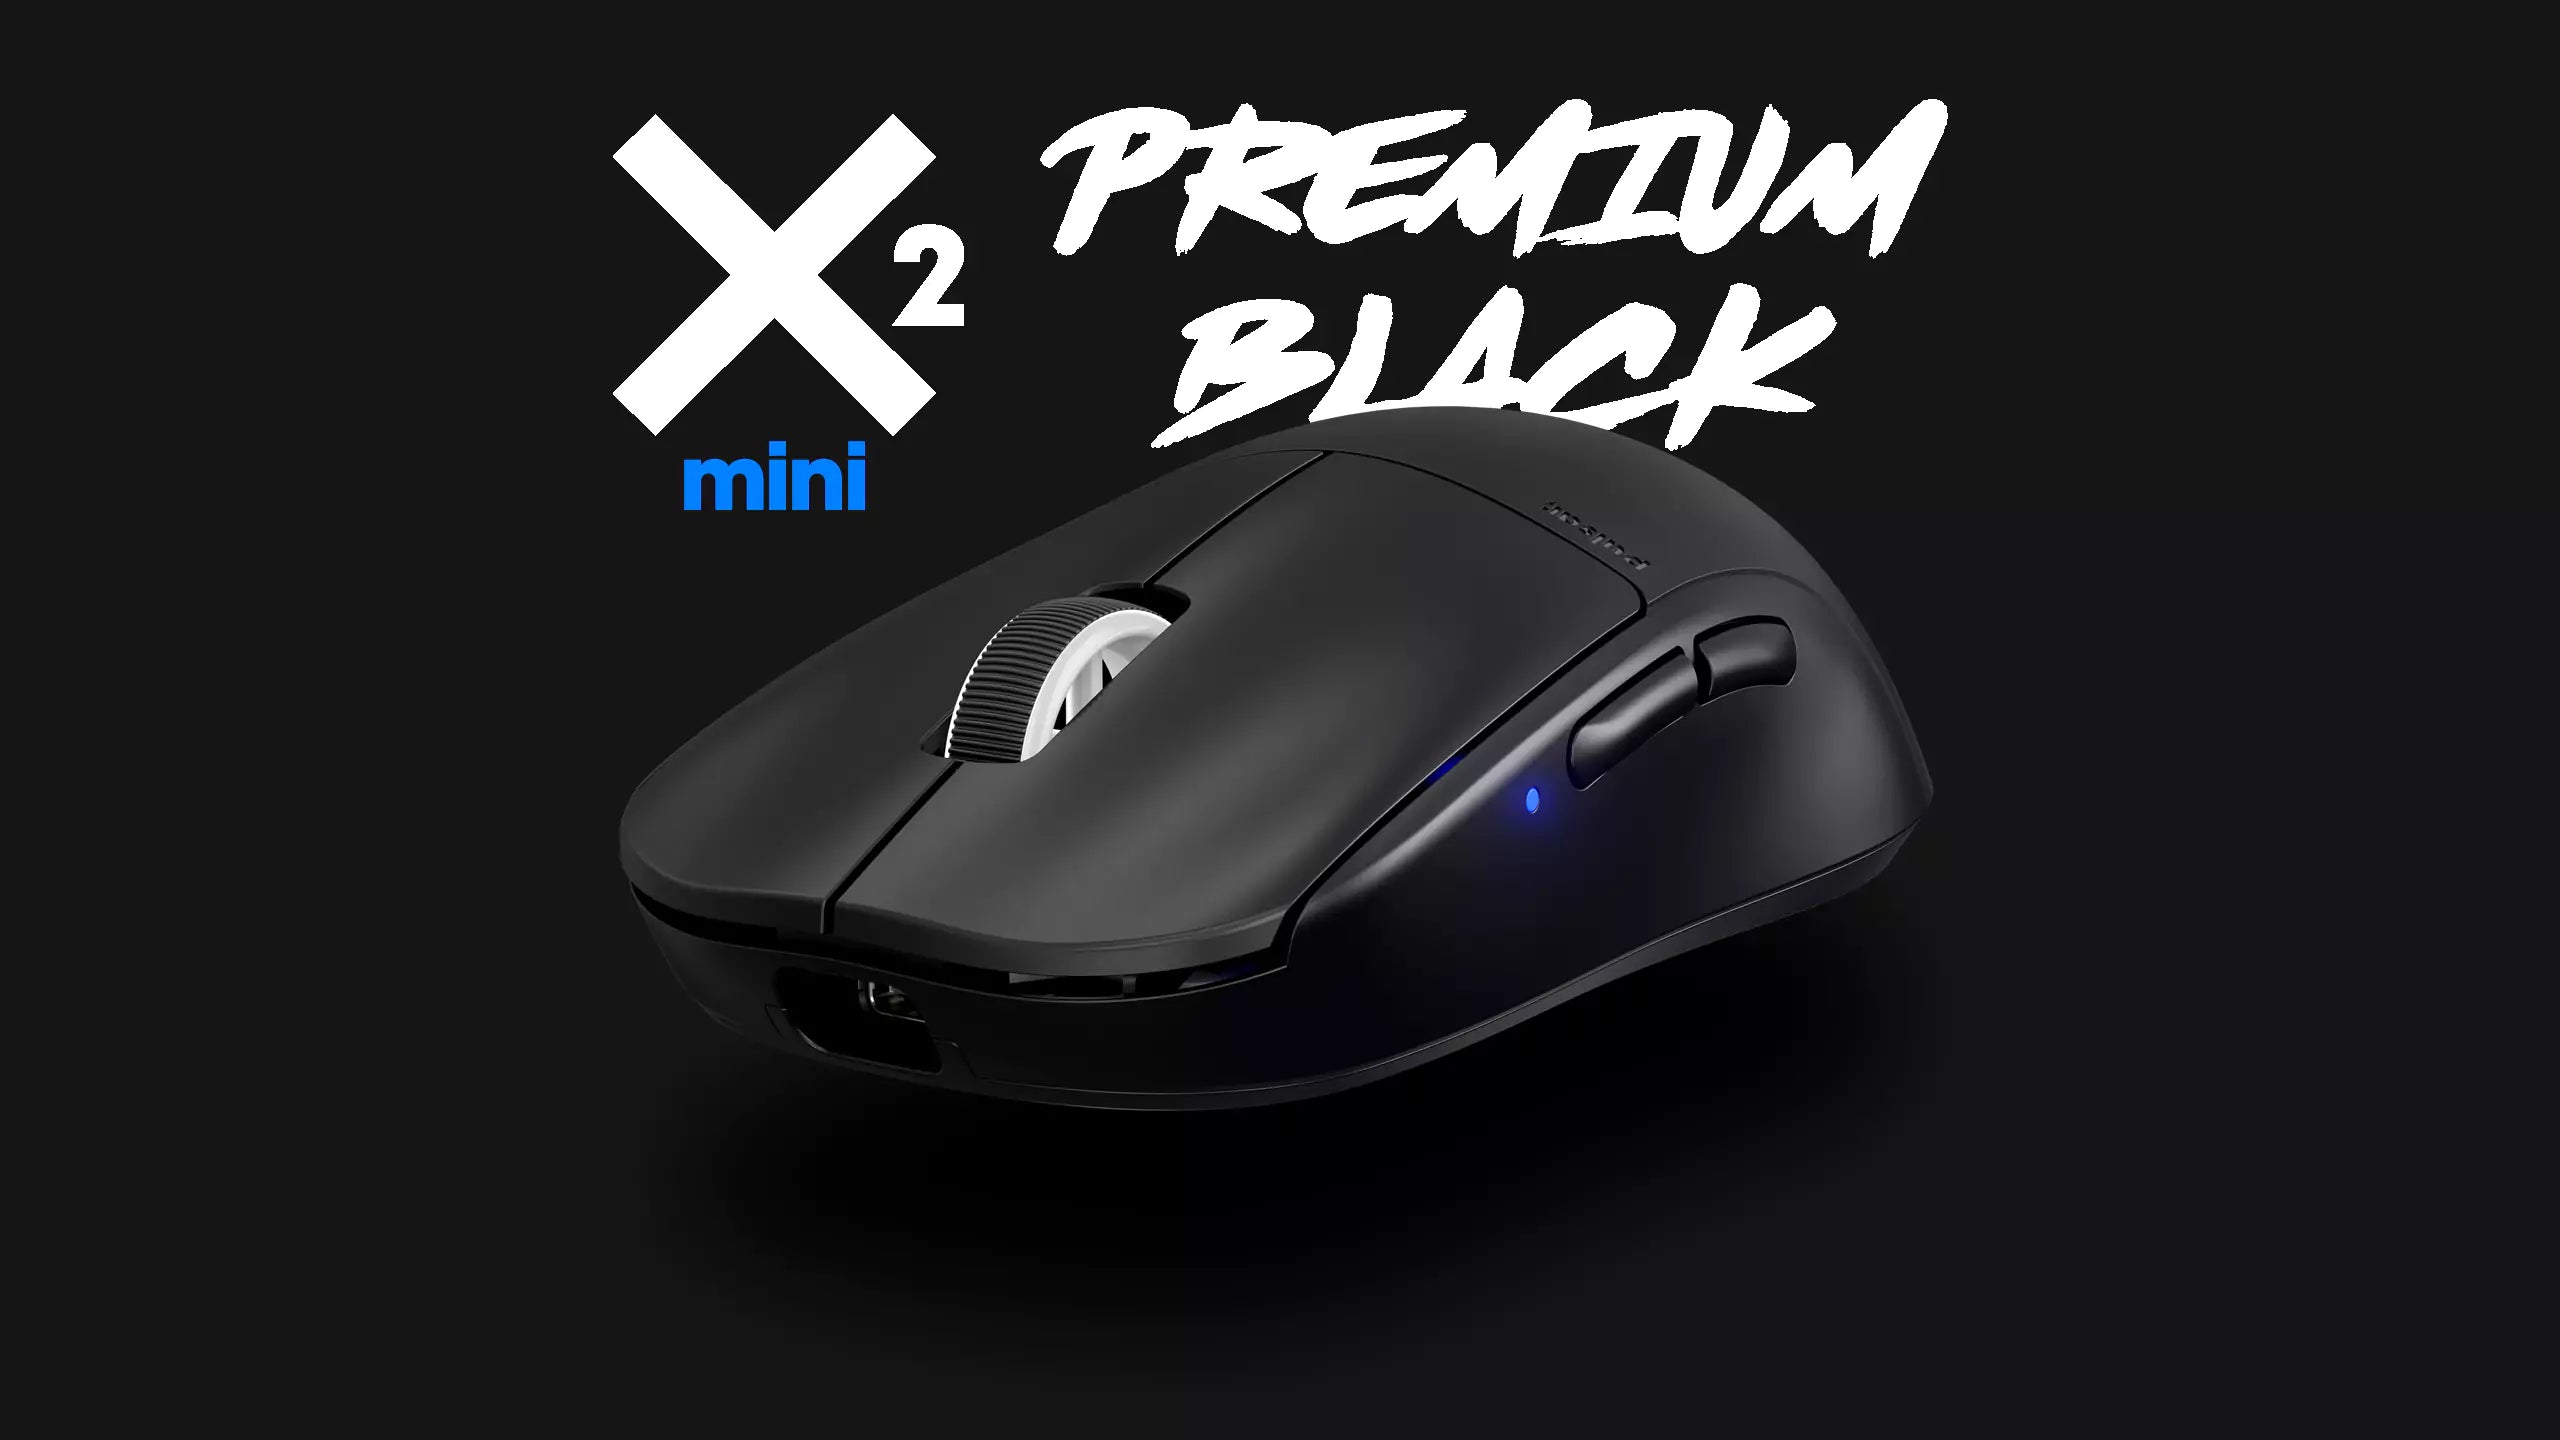 Pulsar X2 mini Premium Black Edition